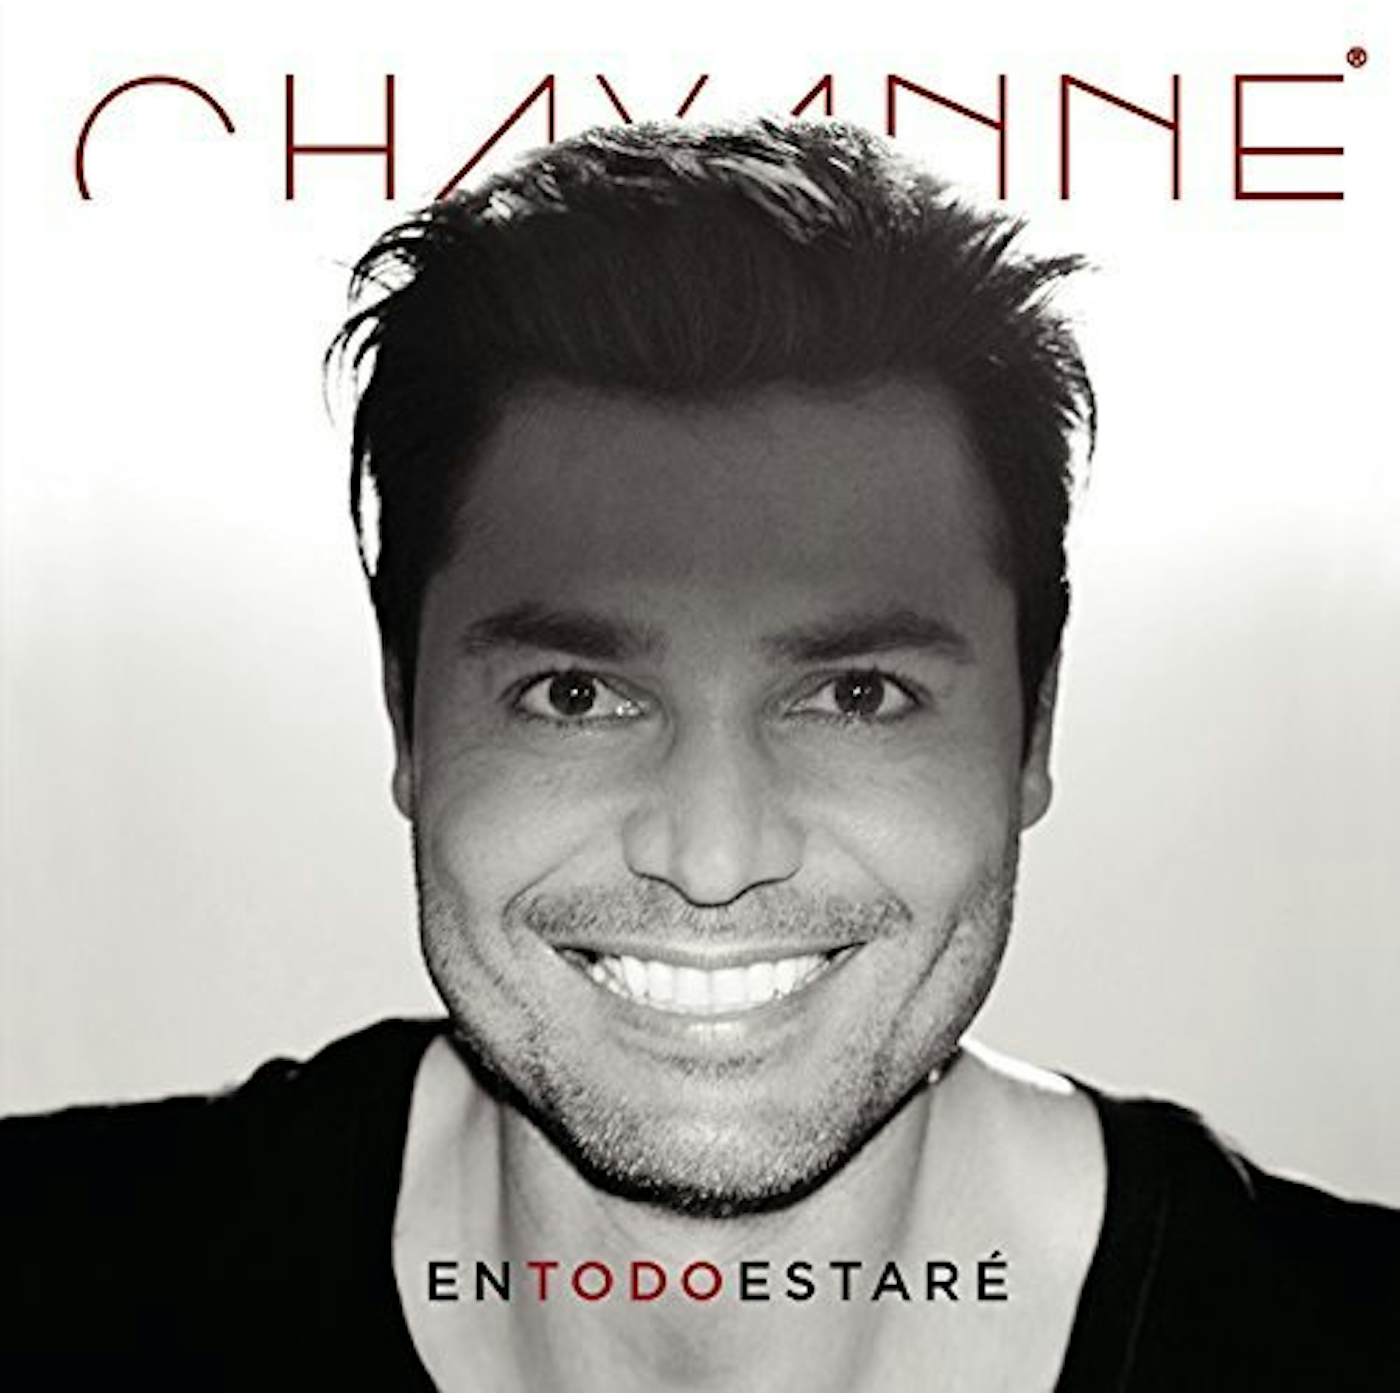 Chayanne EN TODO ESTARE Vinyl Record